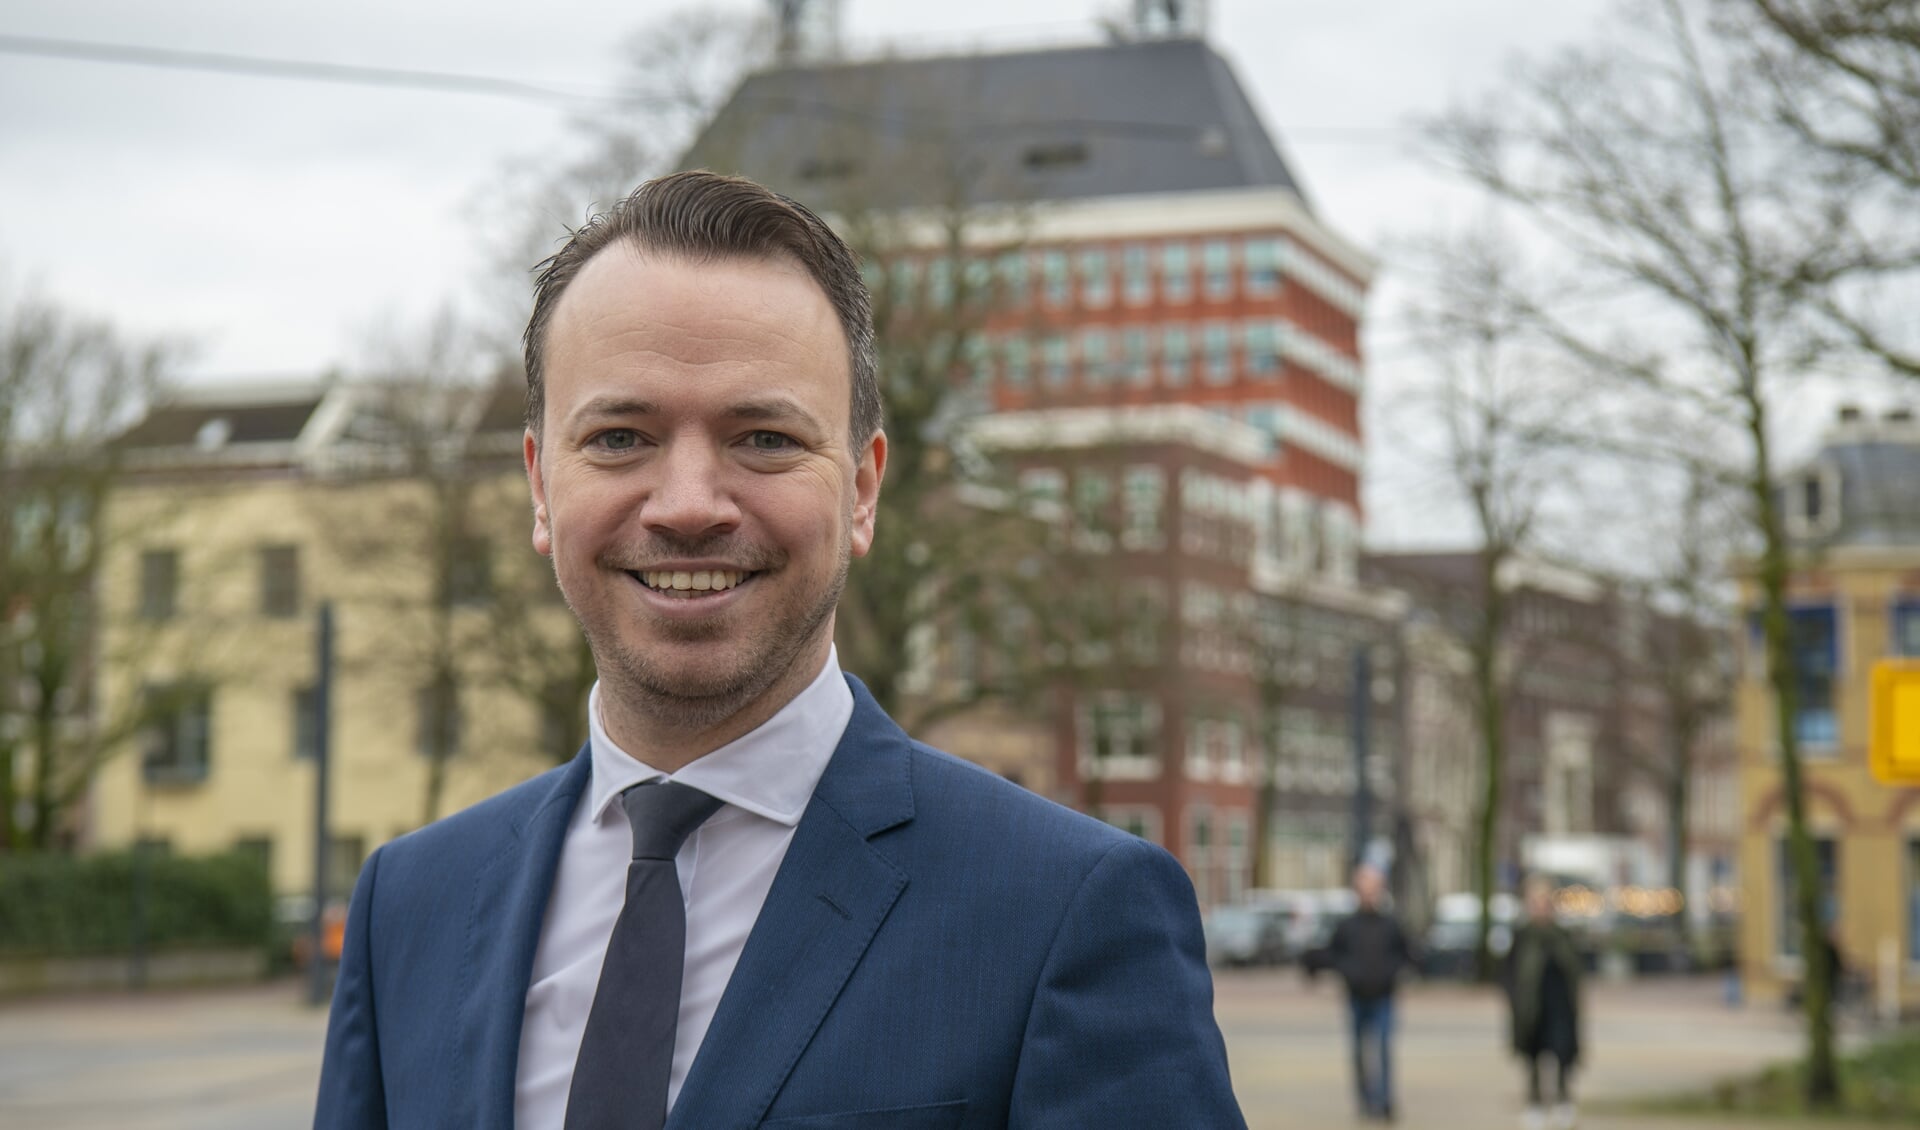 Gedeputeerde Sander de Rouwe (CDA) is tot 1 oktober 2021 ambassadeur voor de campagne 'Fryslân Werkt'.